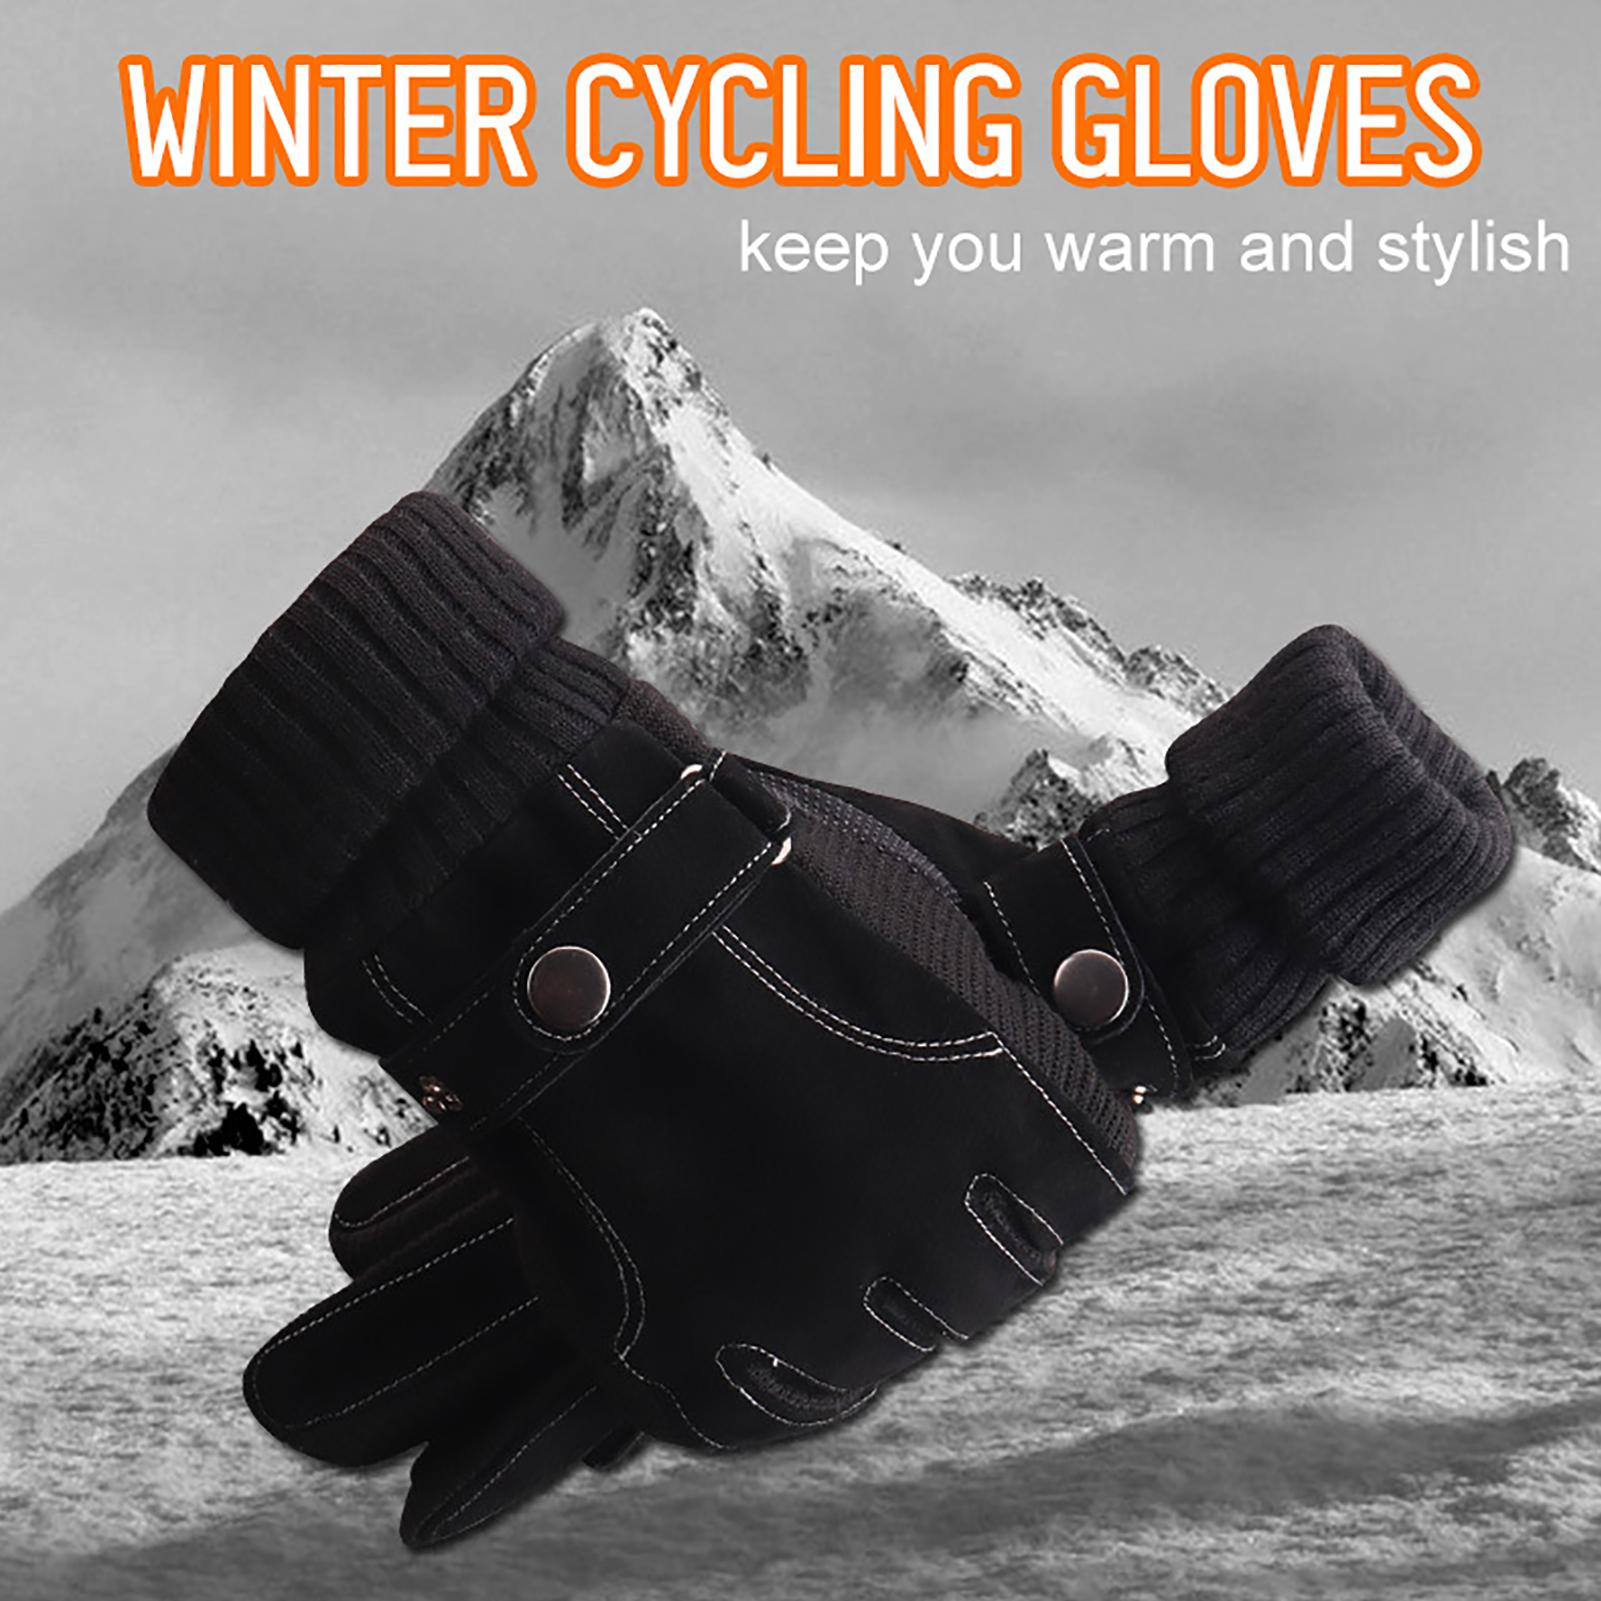 Găng tay bằng lông cừu, có thể chạm màn hình cảm ứng dùng trong mùa đông, hoạt động thể thao như đạp xe, trượt tuyết